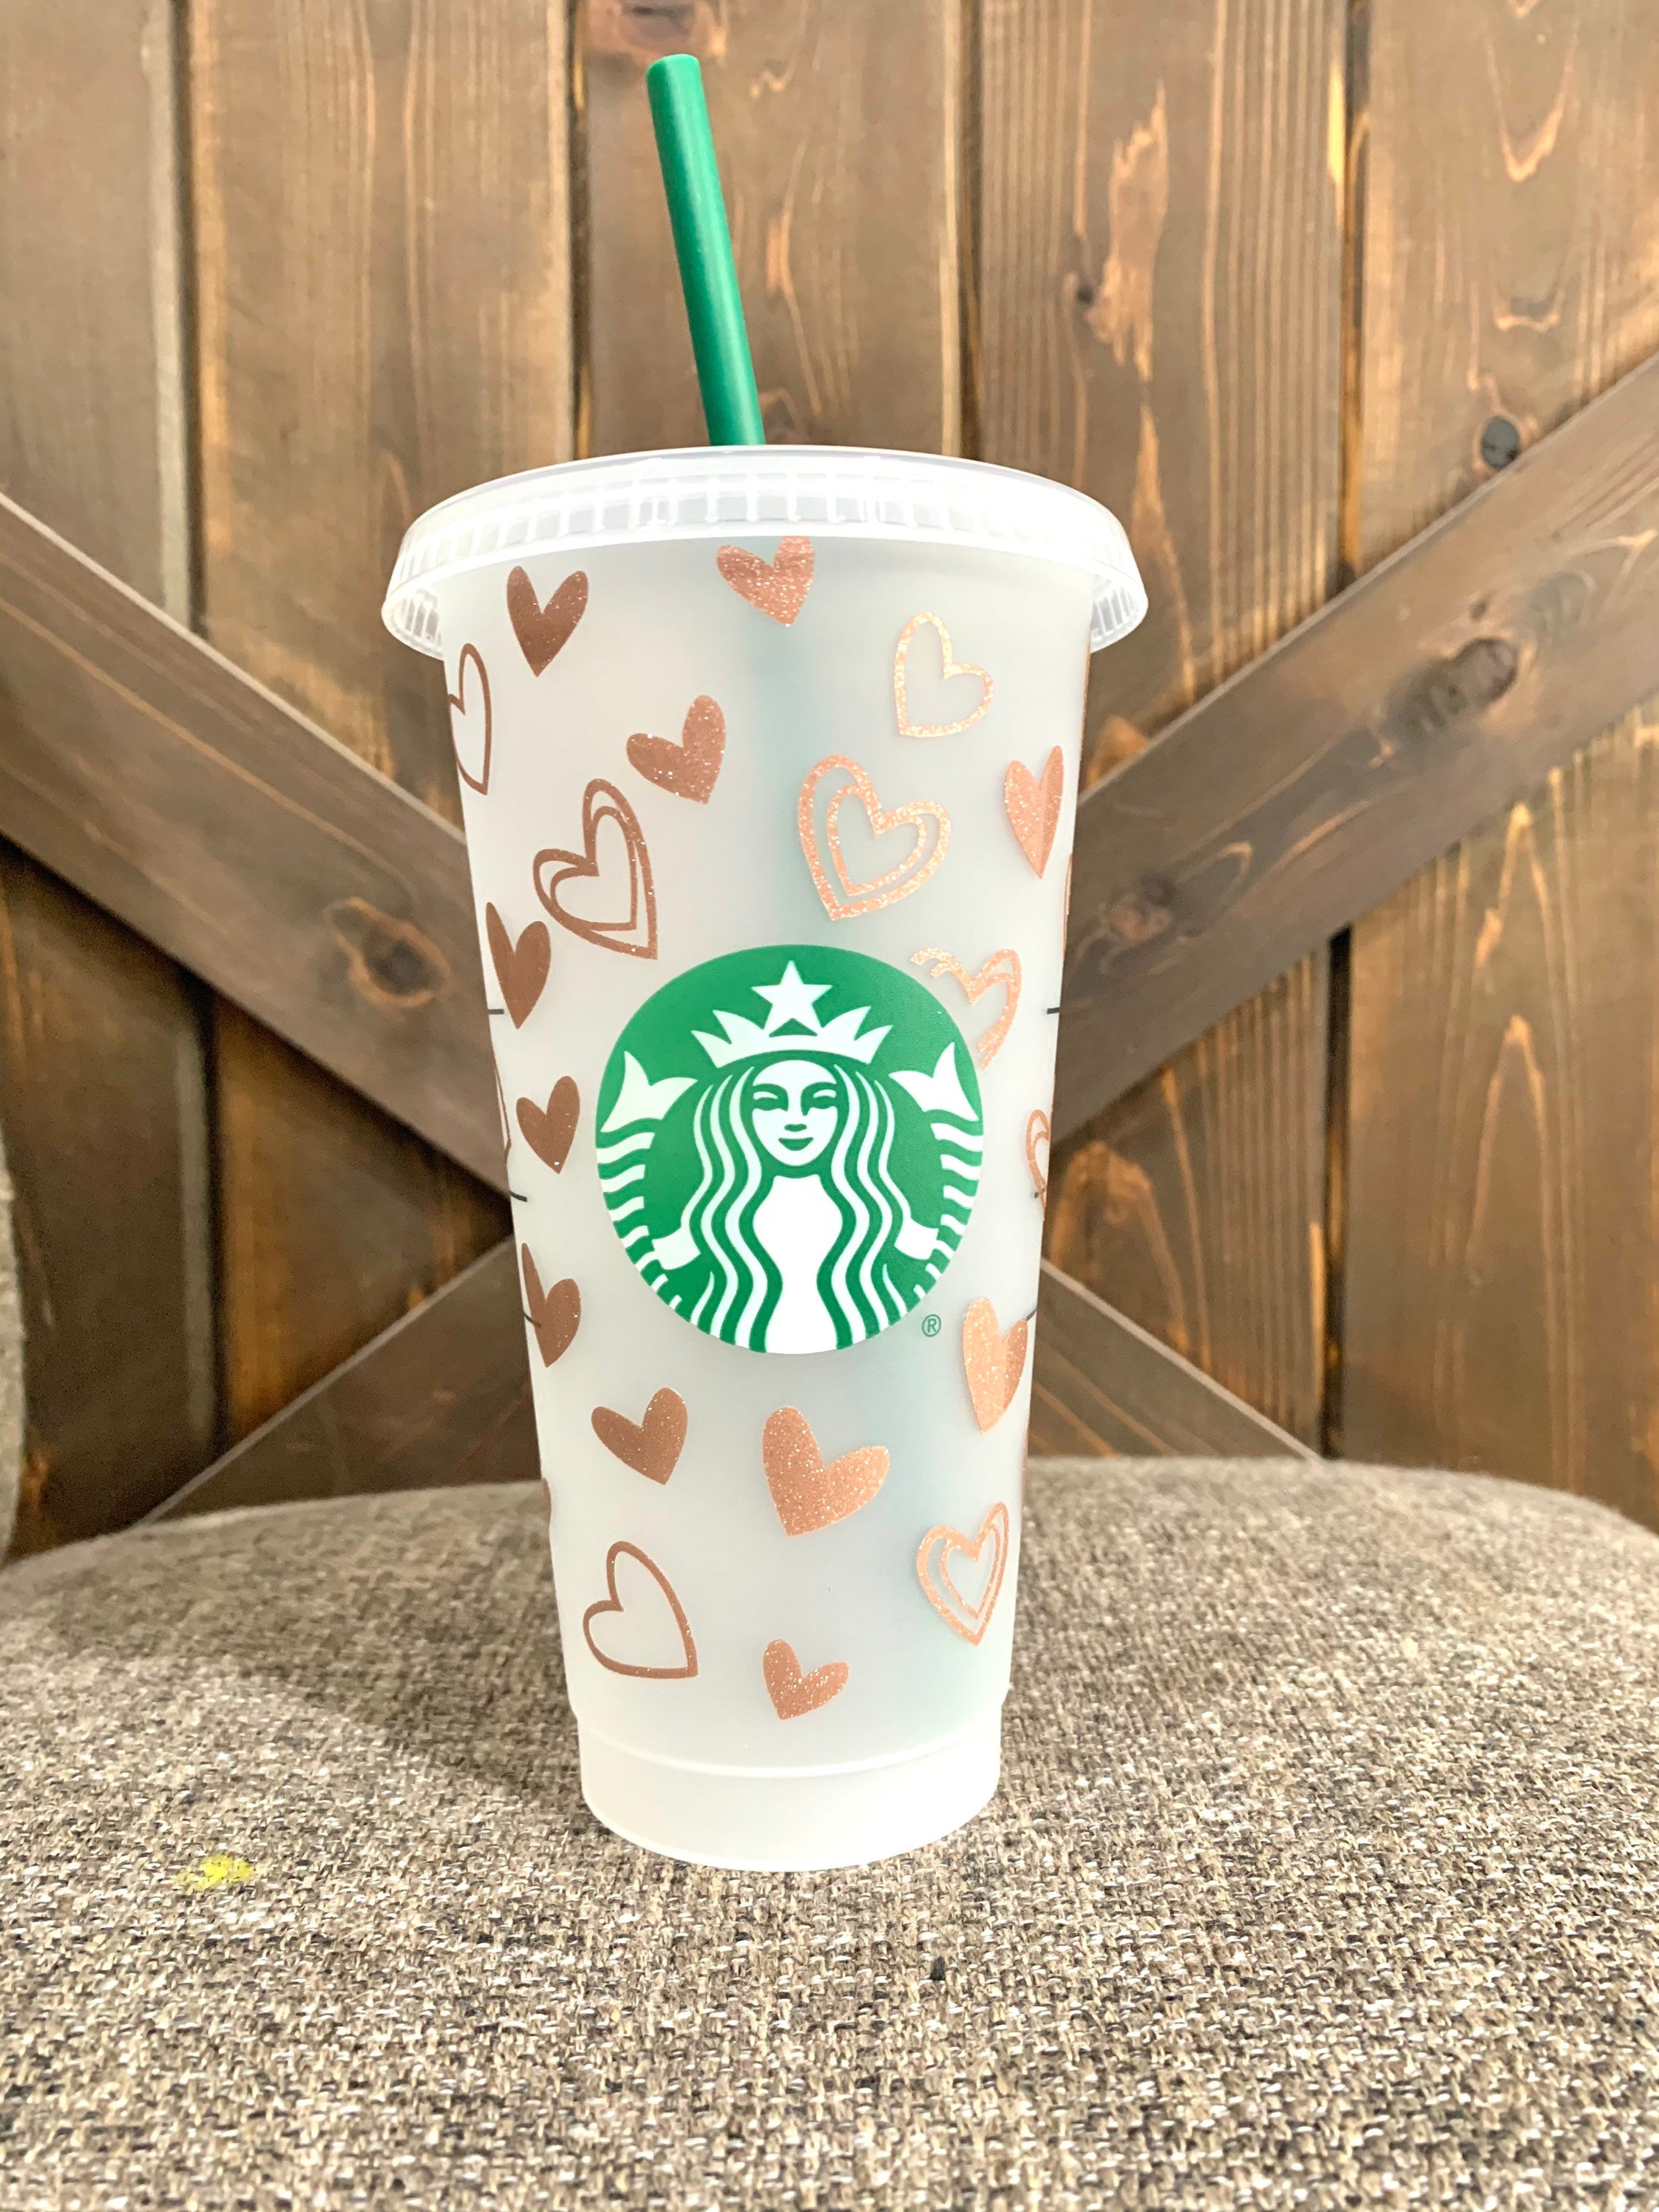 Rose Gold LV Inspired Starbucks Cup  Starbucks cup gift, Personalized starbucks  cup, Starbucks cup art